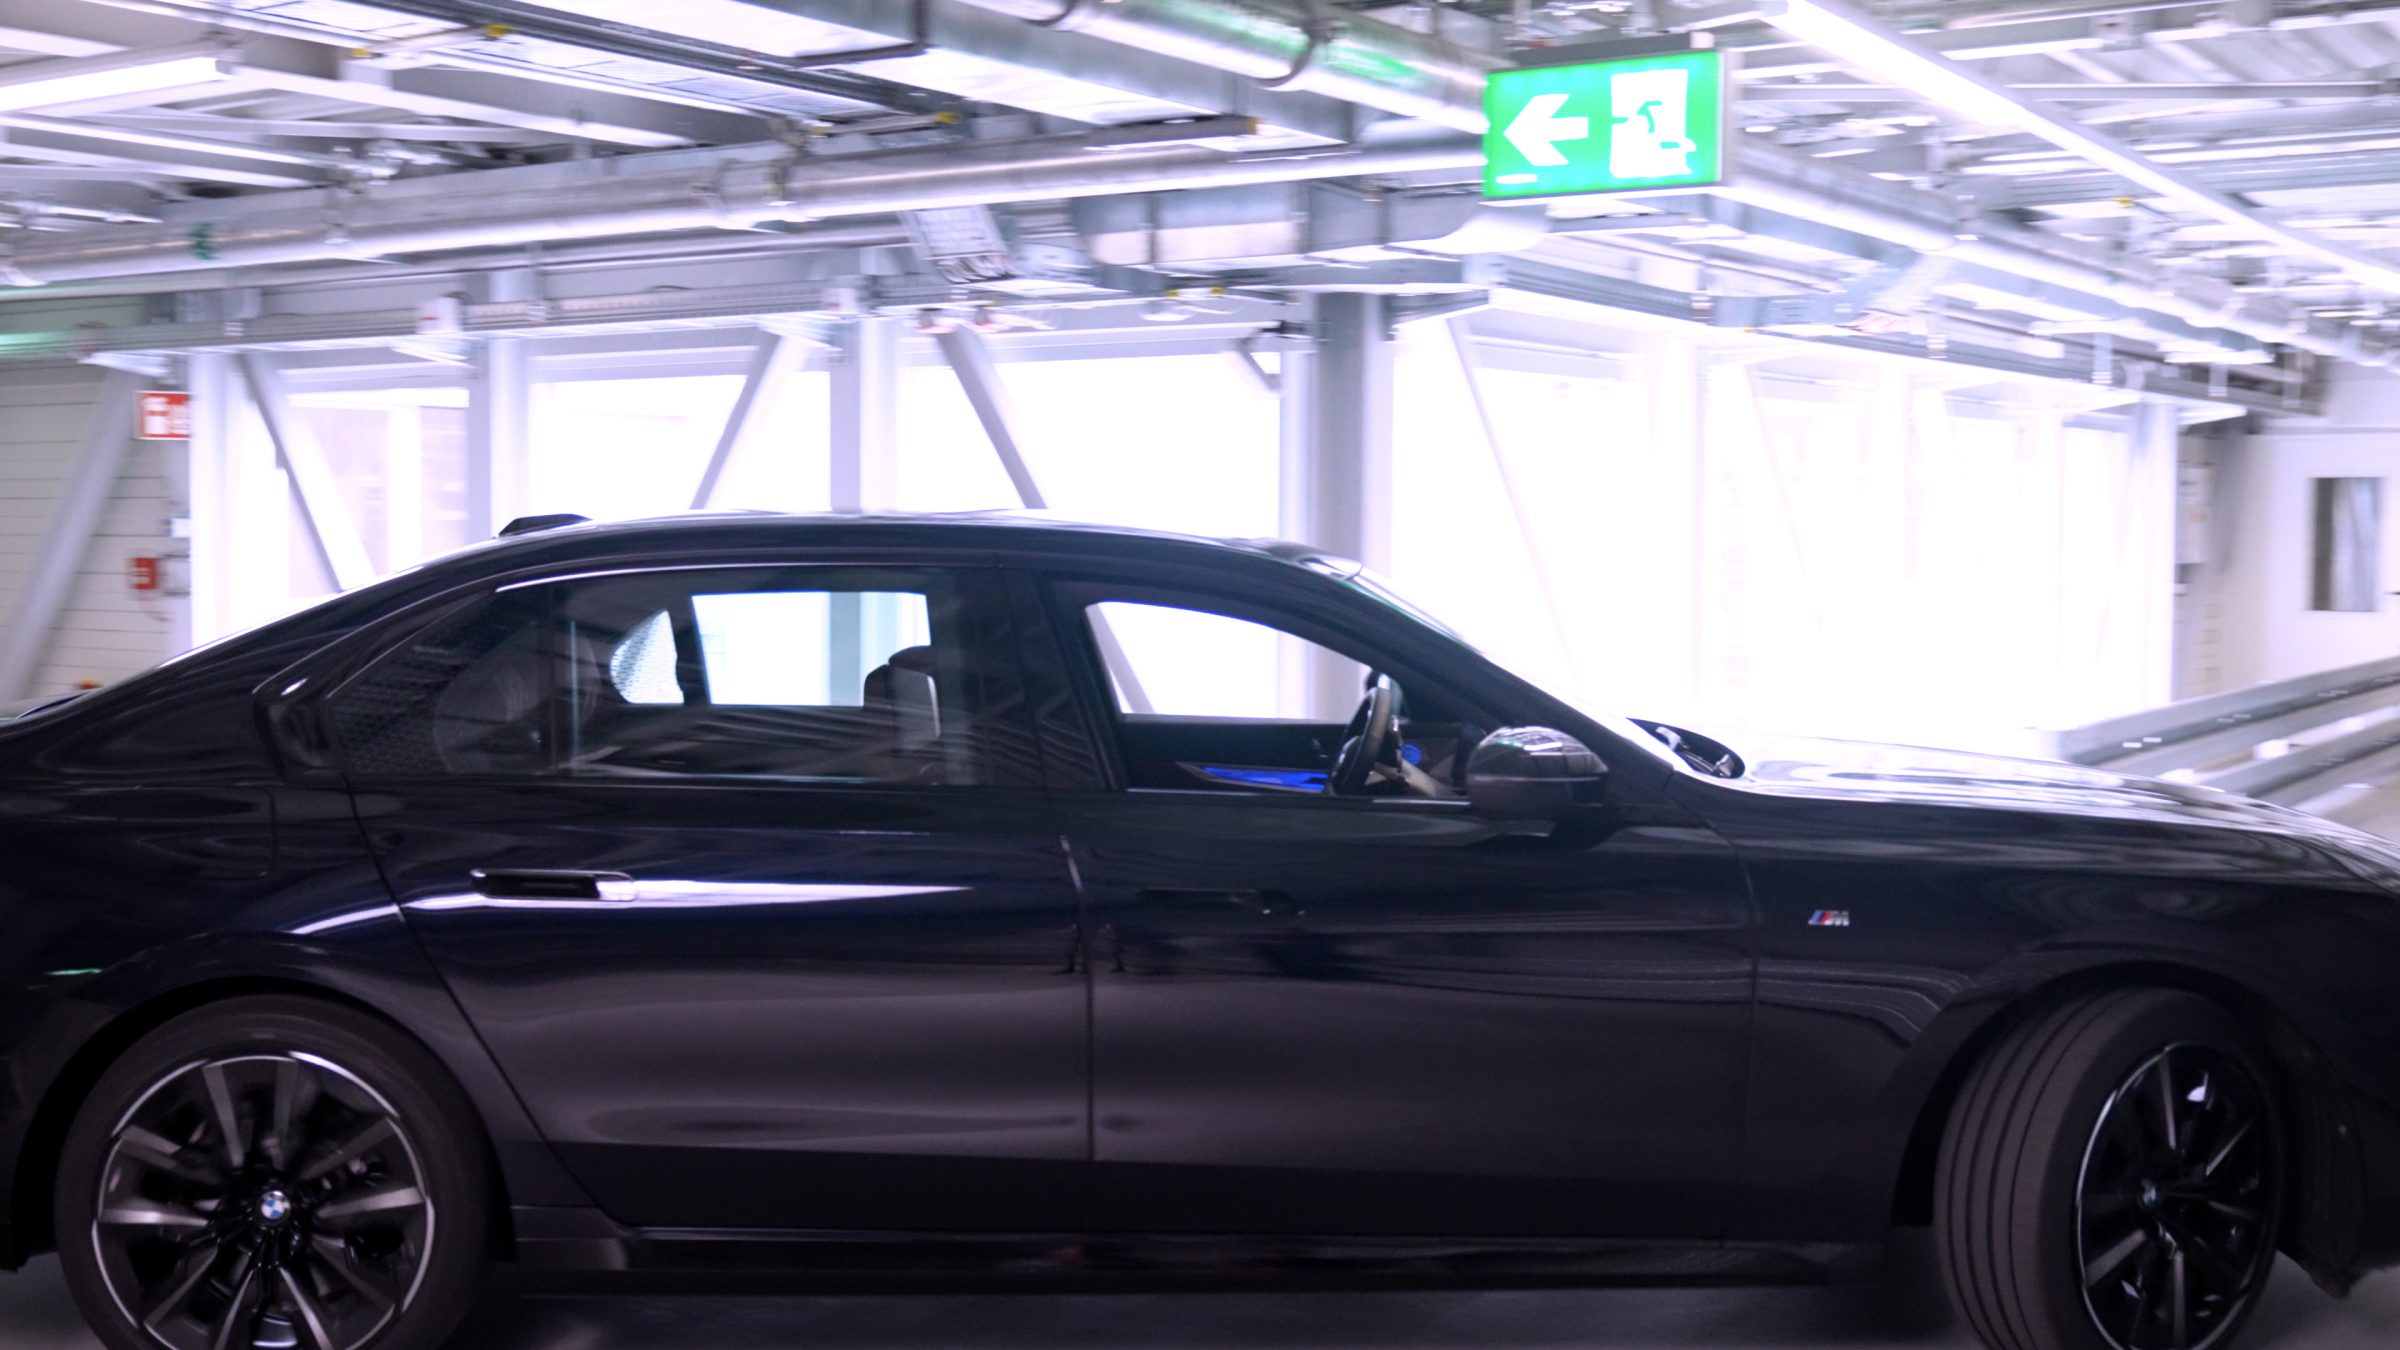 A BMW divulgou alguns detalhes sobre o projeto de carros autônomos dentro da sua linha de montagem na Alemanha